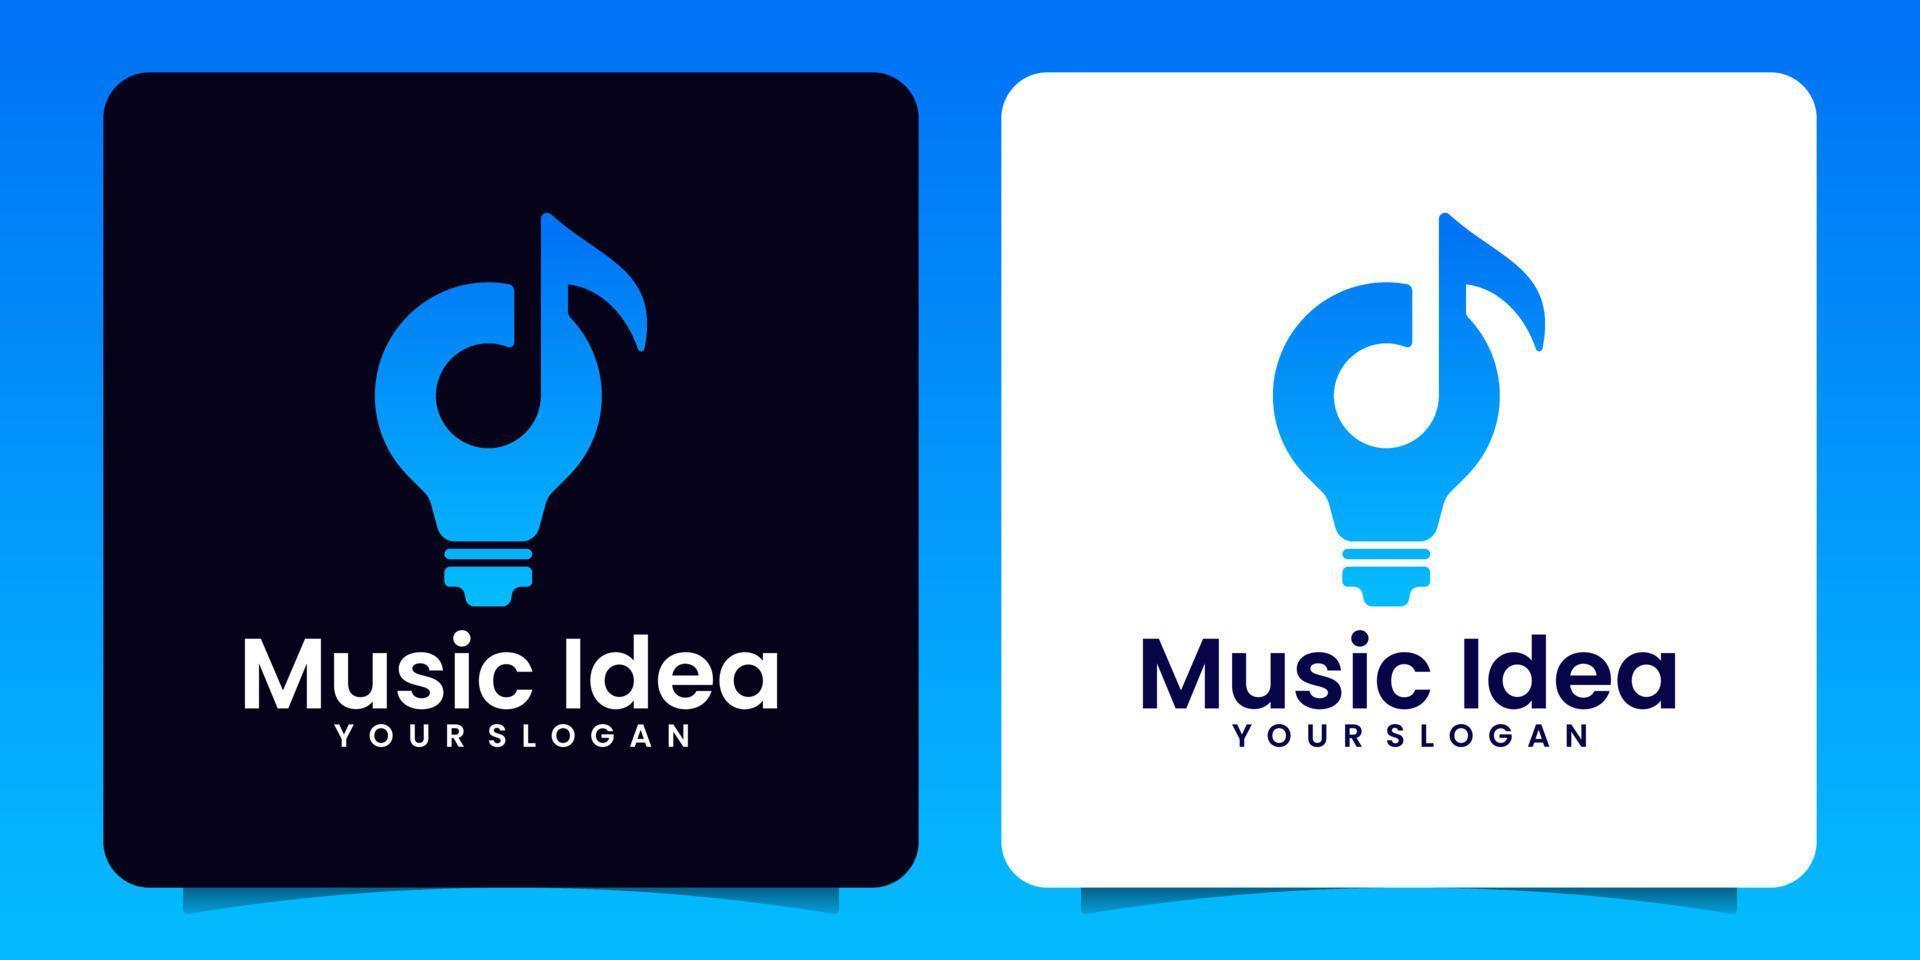 Bulb music notes idea logo template vector